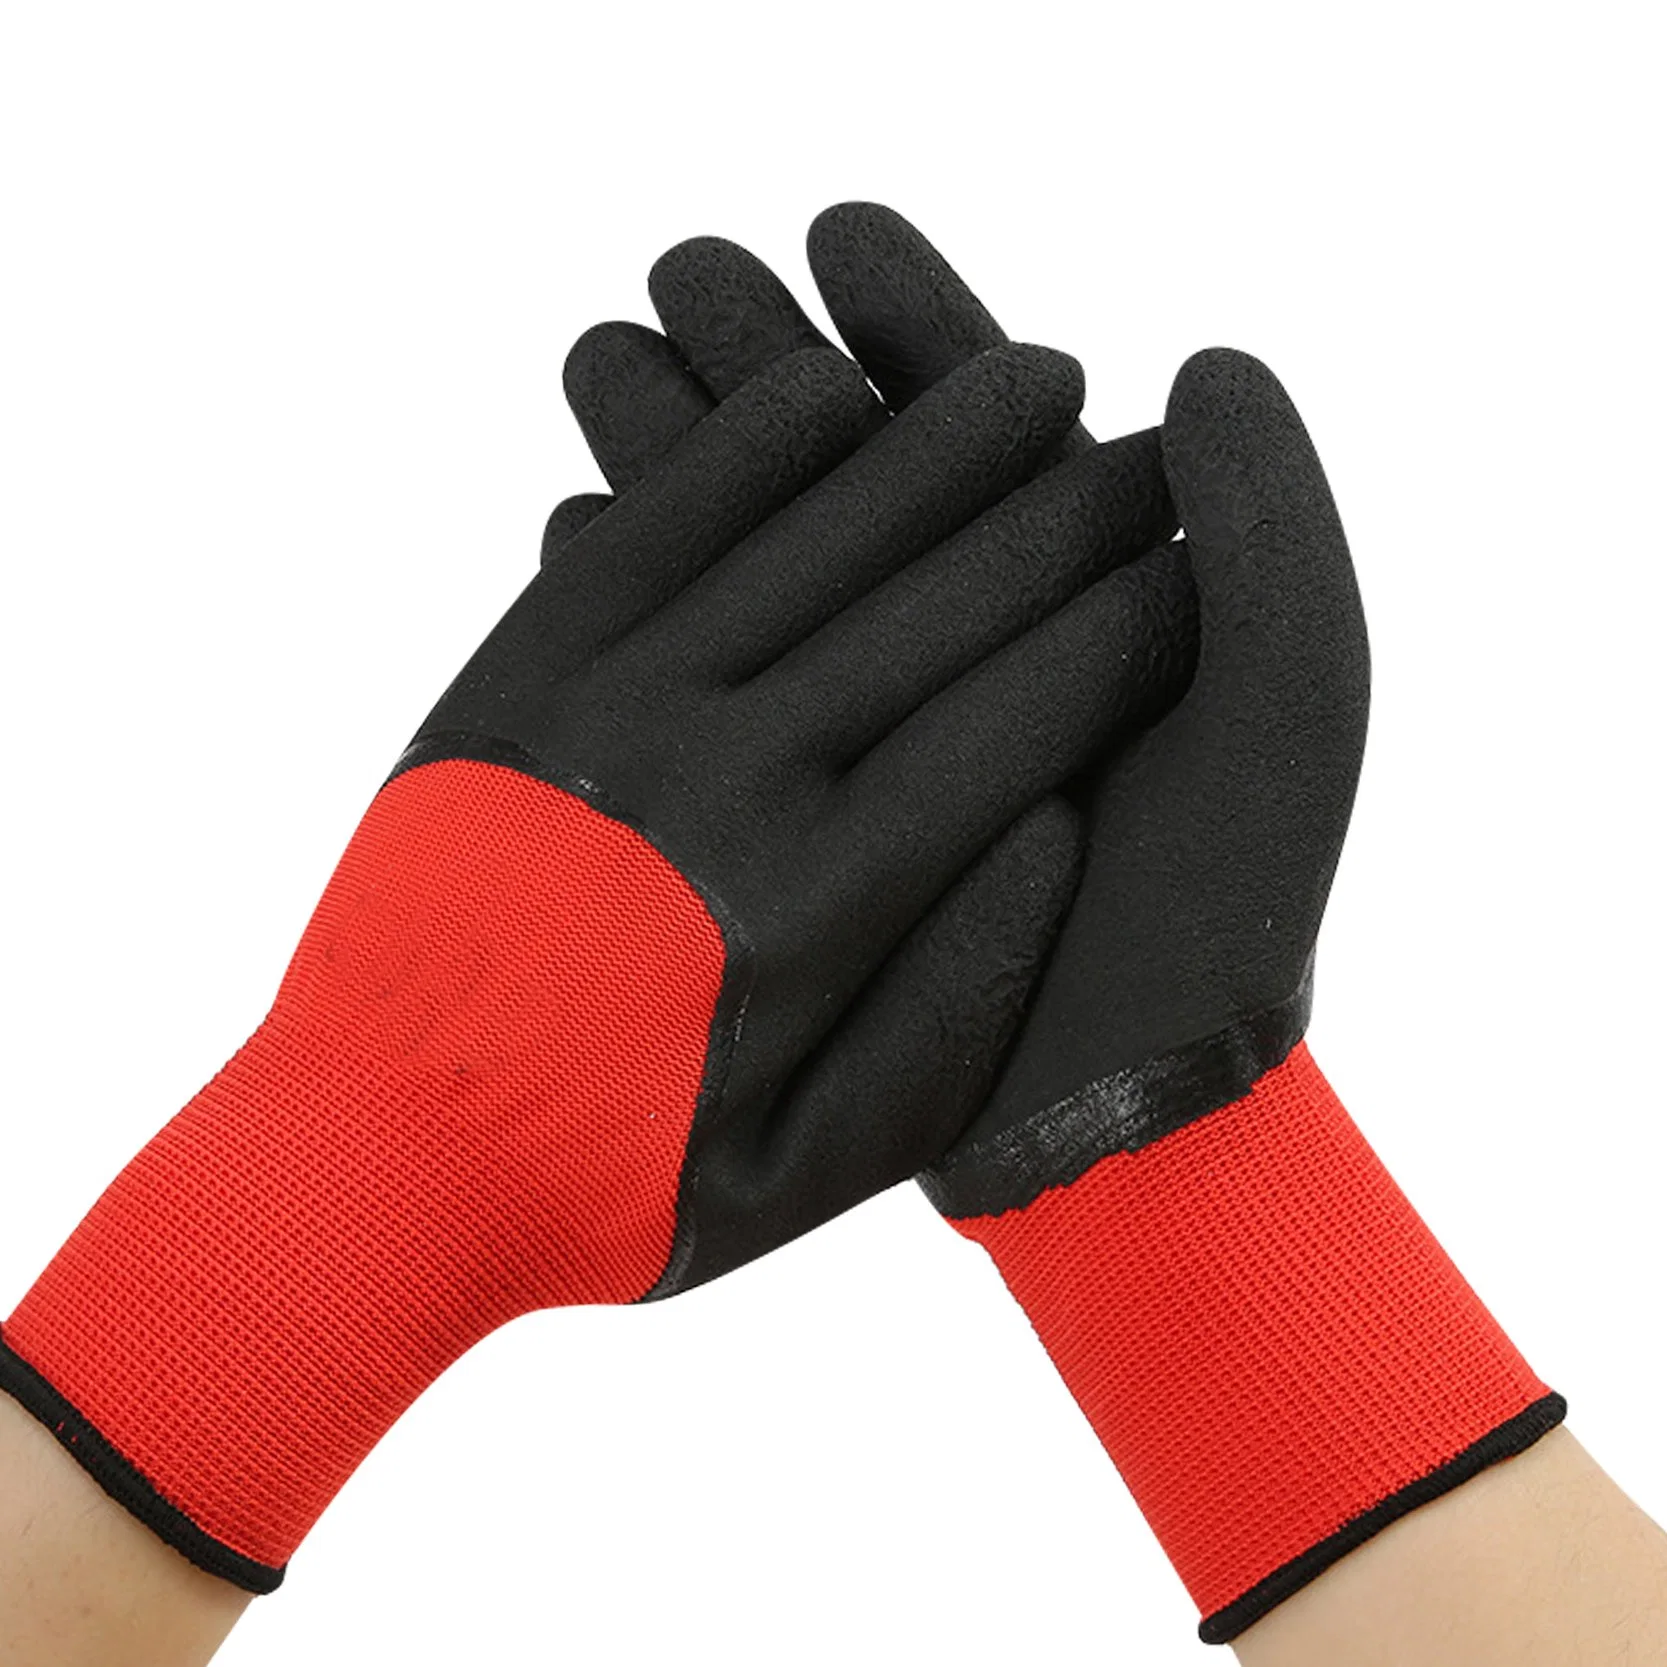 Прямых продаж на заводе 13G полиэстер латекс веяние упор для рук с покрытием для повторного использования рабочих по охране труда защитные перчатки для руки садоводство домашних хозяйств